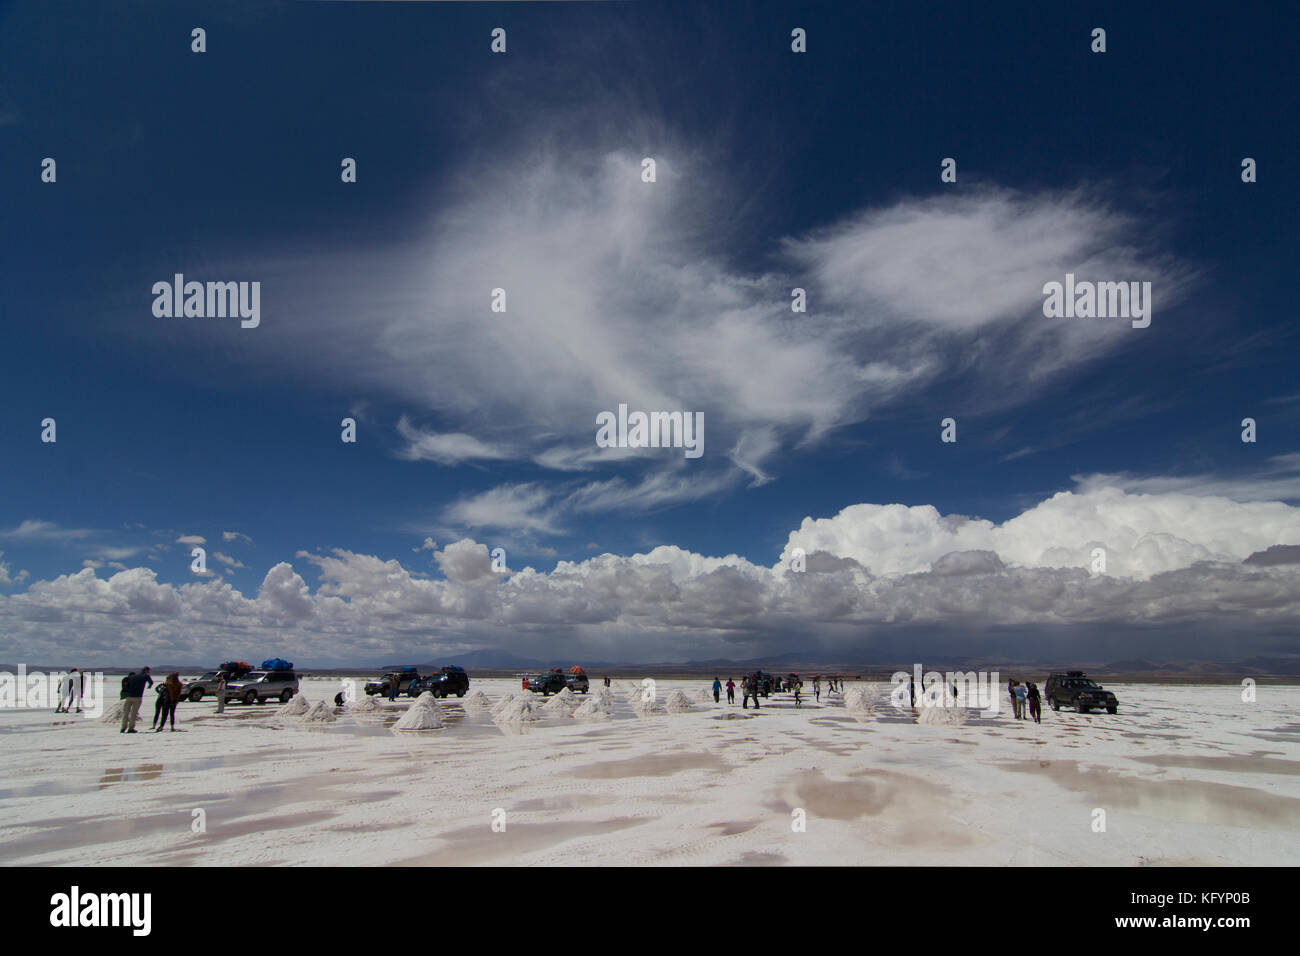 Plat de sel dans le désert d'Atacama, Uyuni, Bolivie Banque D'Images